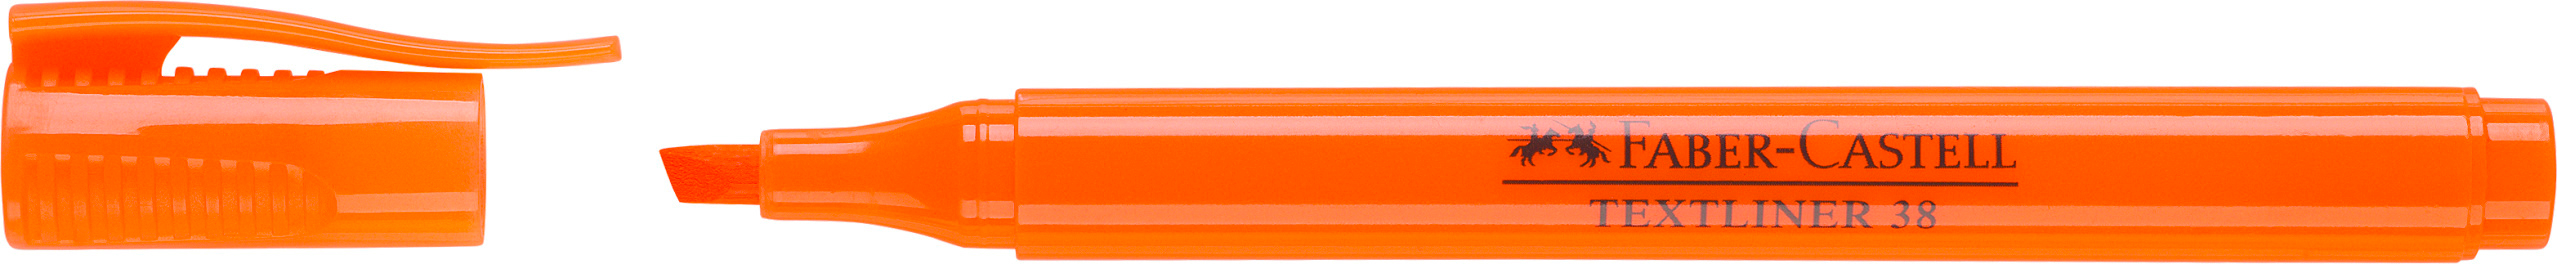 FABER-CASTELL Textmarker 38 1-4mm 157715 orange orange